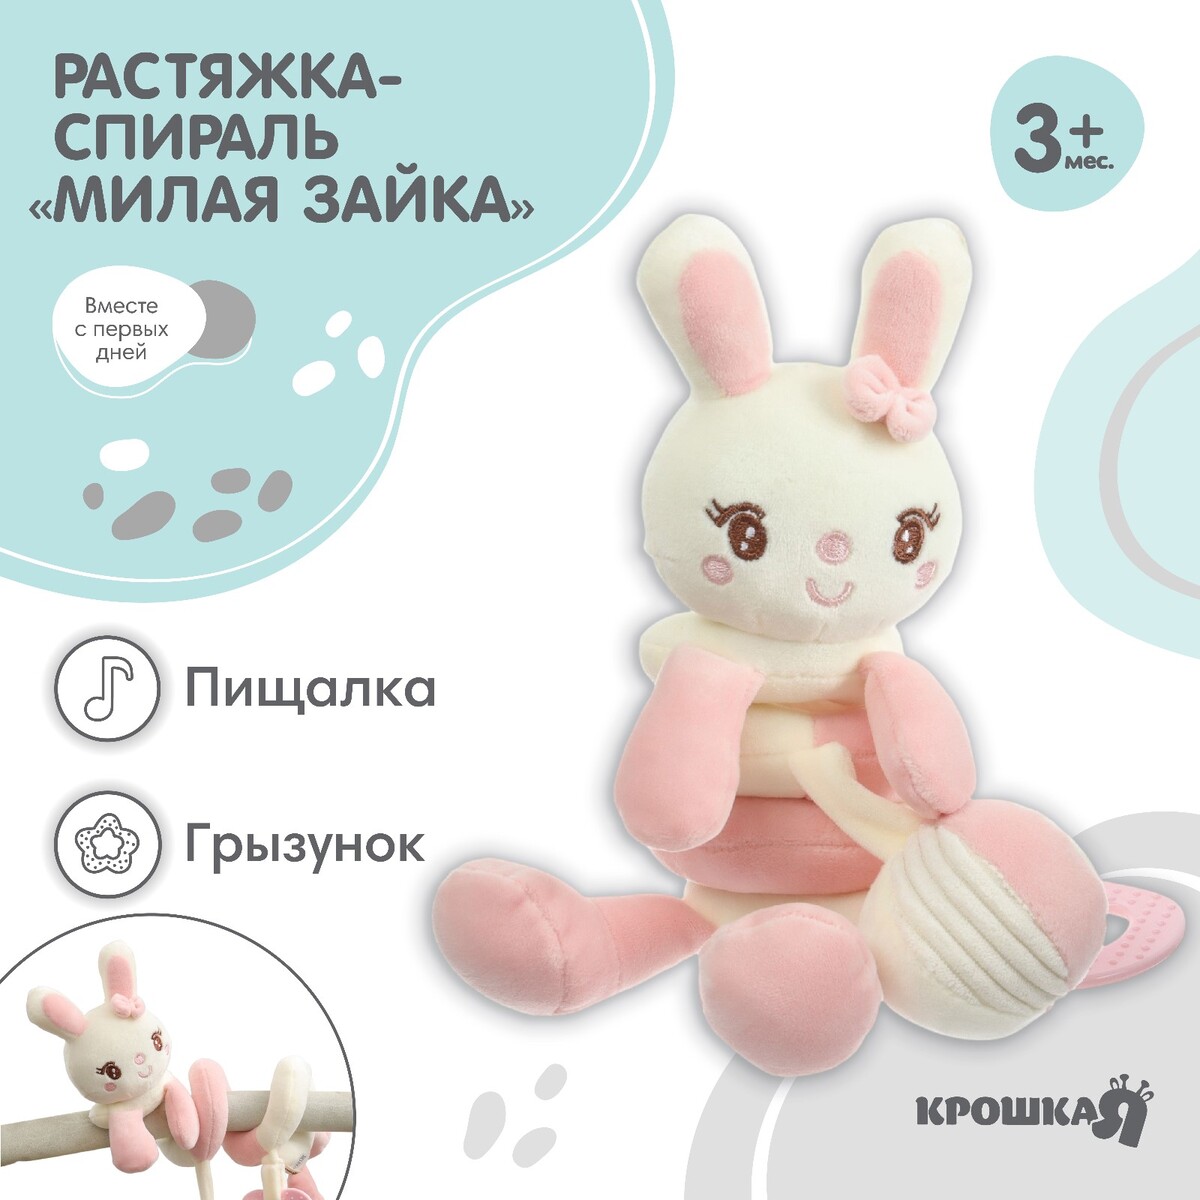 Растяжка - спираль с игрушками дуга на коляску / кроватку для малышей русские народные сказки для малышей ил ю устиновой